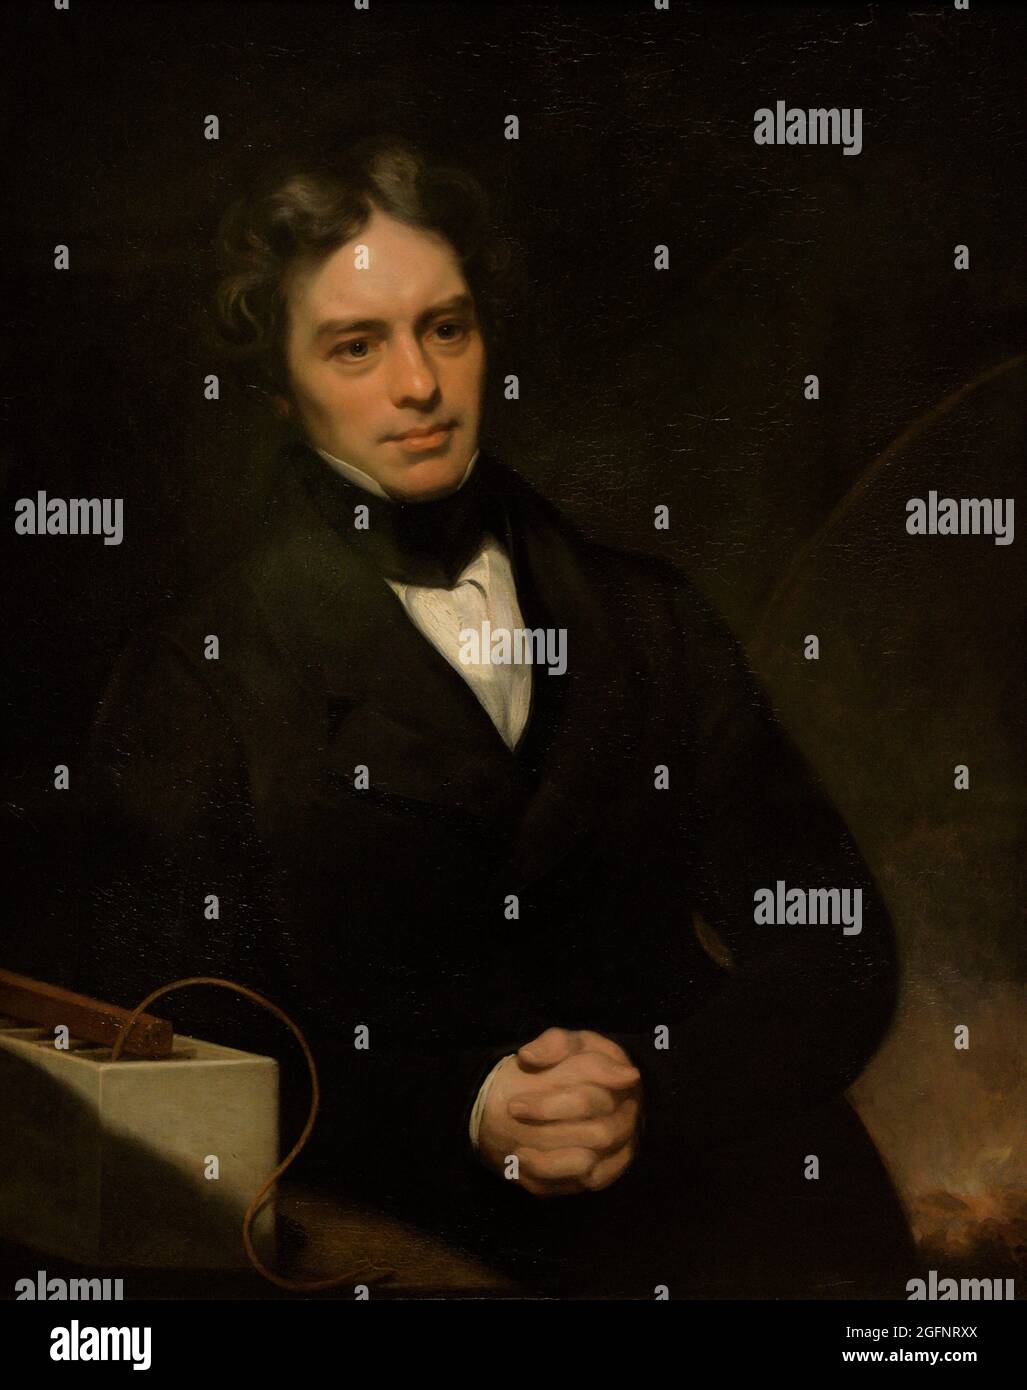 Michael Faraday (1791-1867). Fisico e chimico britannico. Scopritore di induzione elettromagnetica ed elettrolisi. Ritratto di Thomas Phillips (1770-1845). Olio su tela (90,8 x 71,1 cm), 1841-1842. National Portrait Gallery. Londra, Inghilterra, Regno Unito. Foto Stock